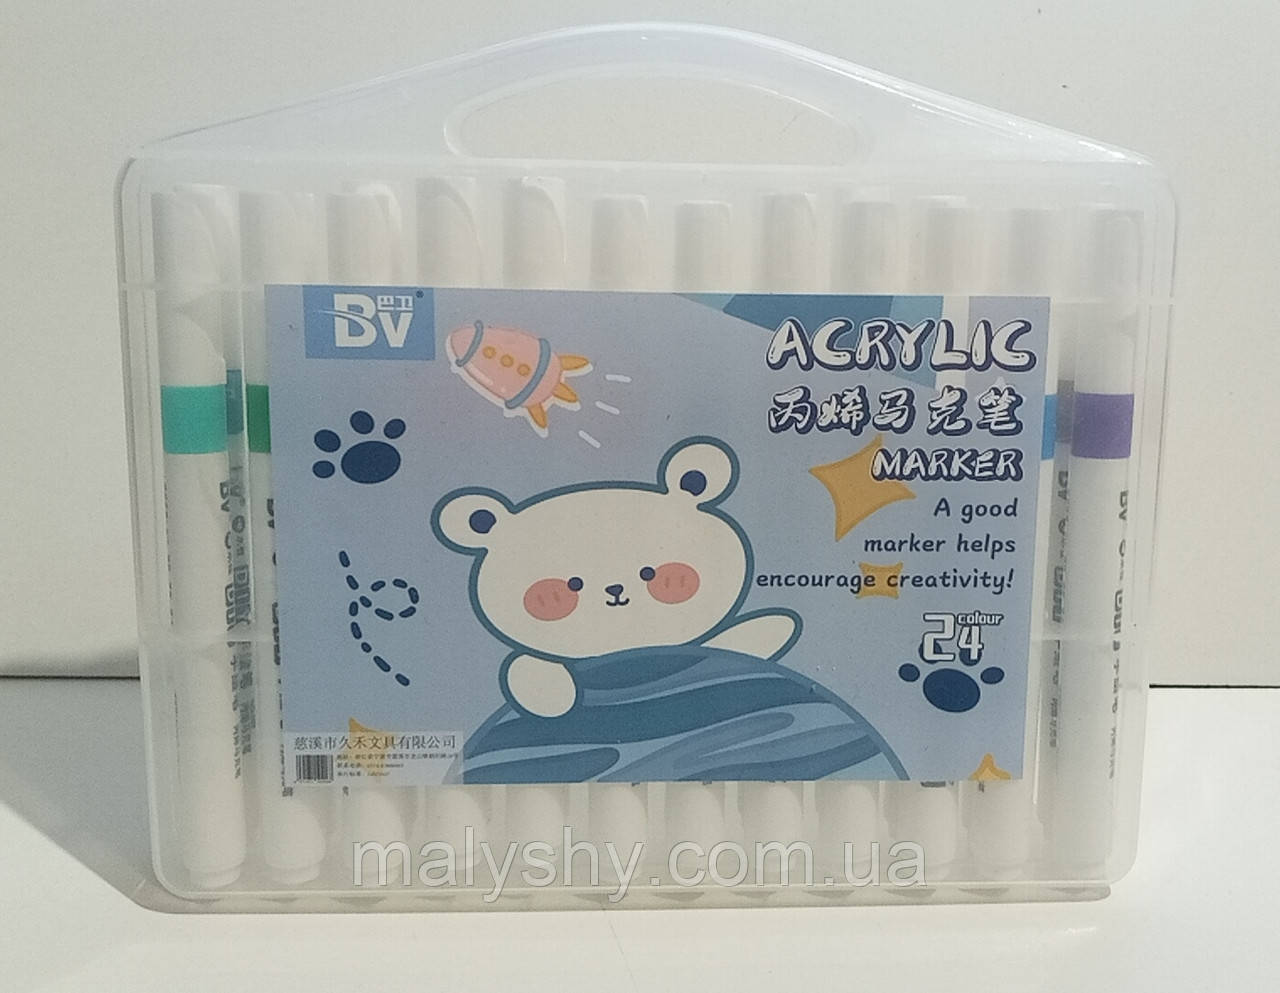 Набір акрилових маркерів 24 кольора "Acrylic Marker" BV-892-24 в пластиковому боксі